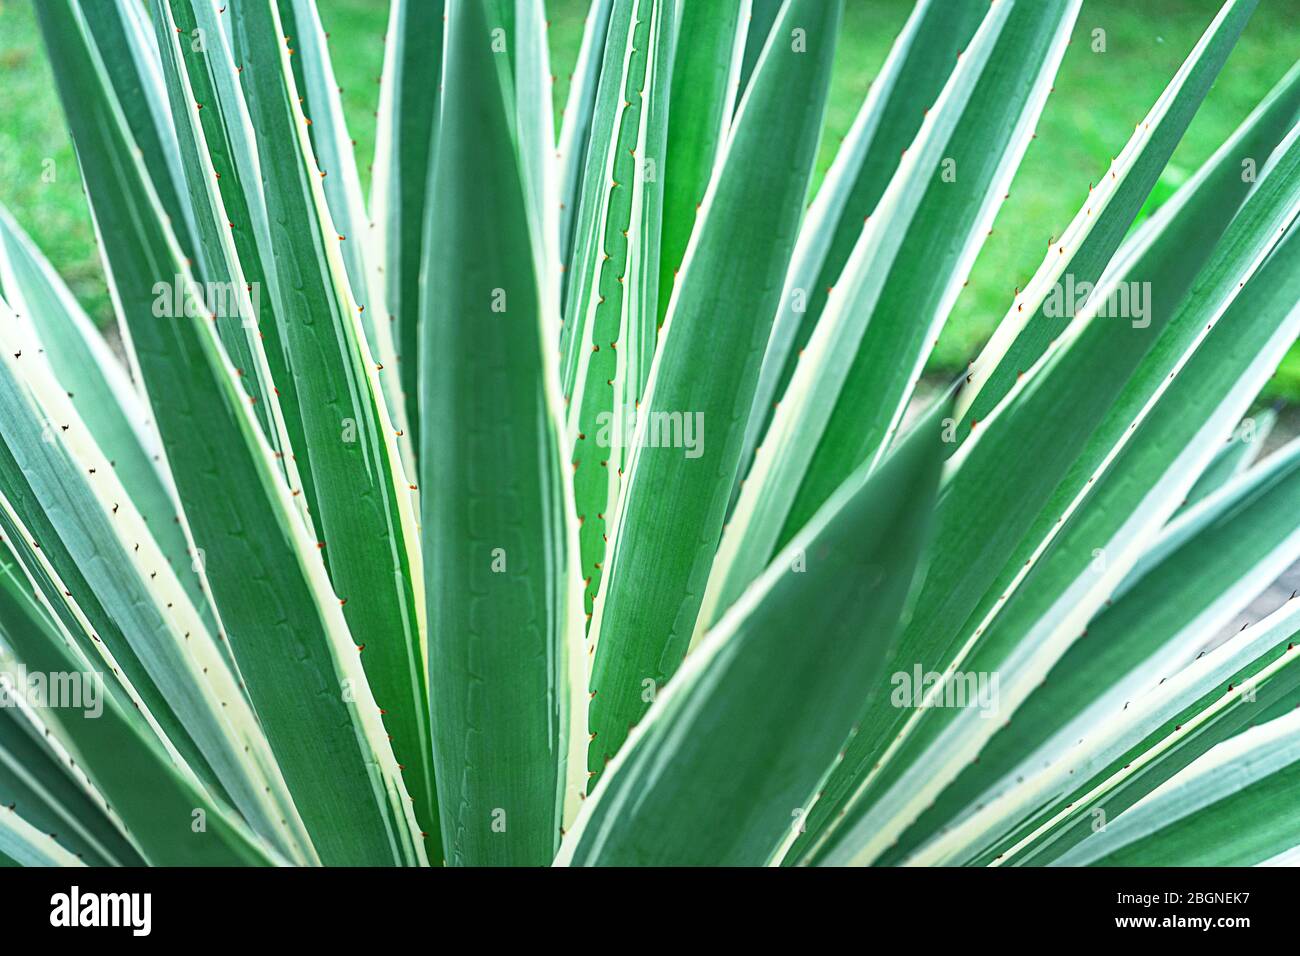 Abstrakt gestreiften natürlichen Hintergrund. Details der spanischen Dolchblätter - yucca gloriosa variegata. Stockfoto